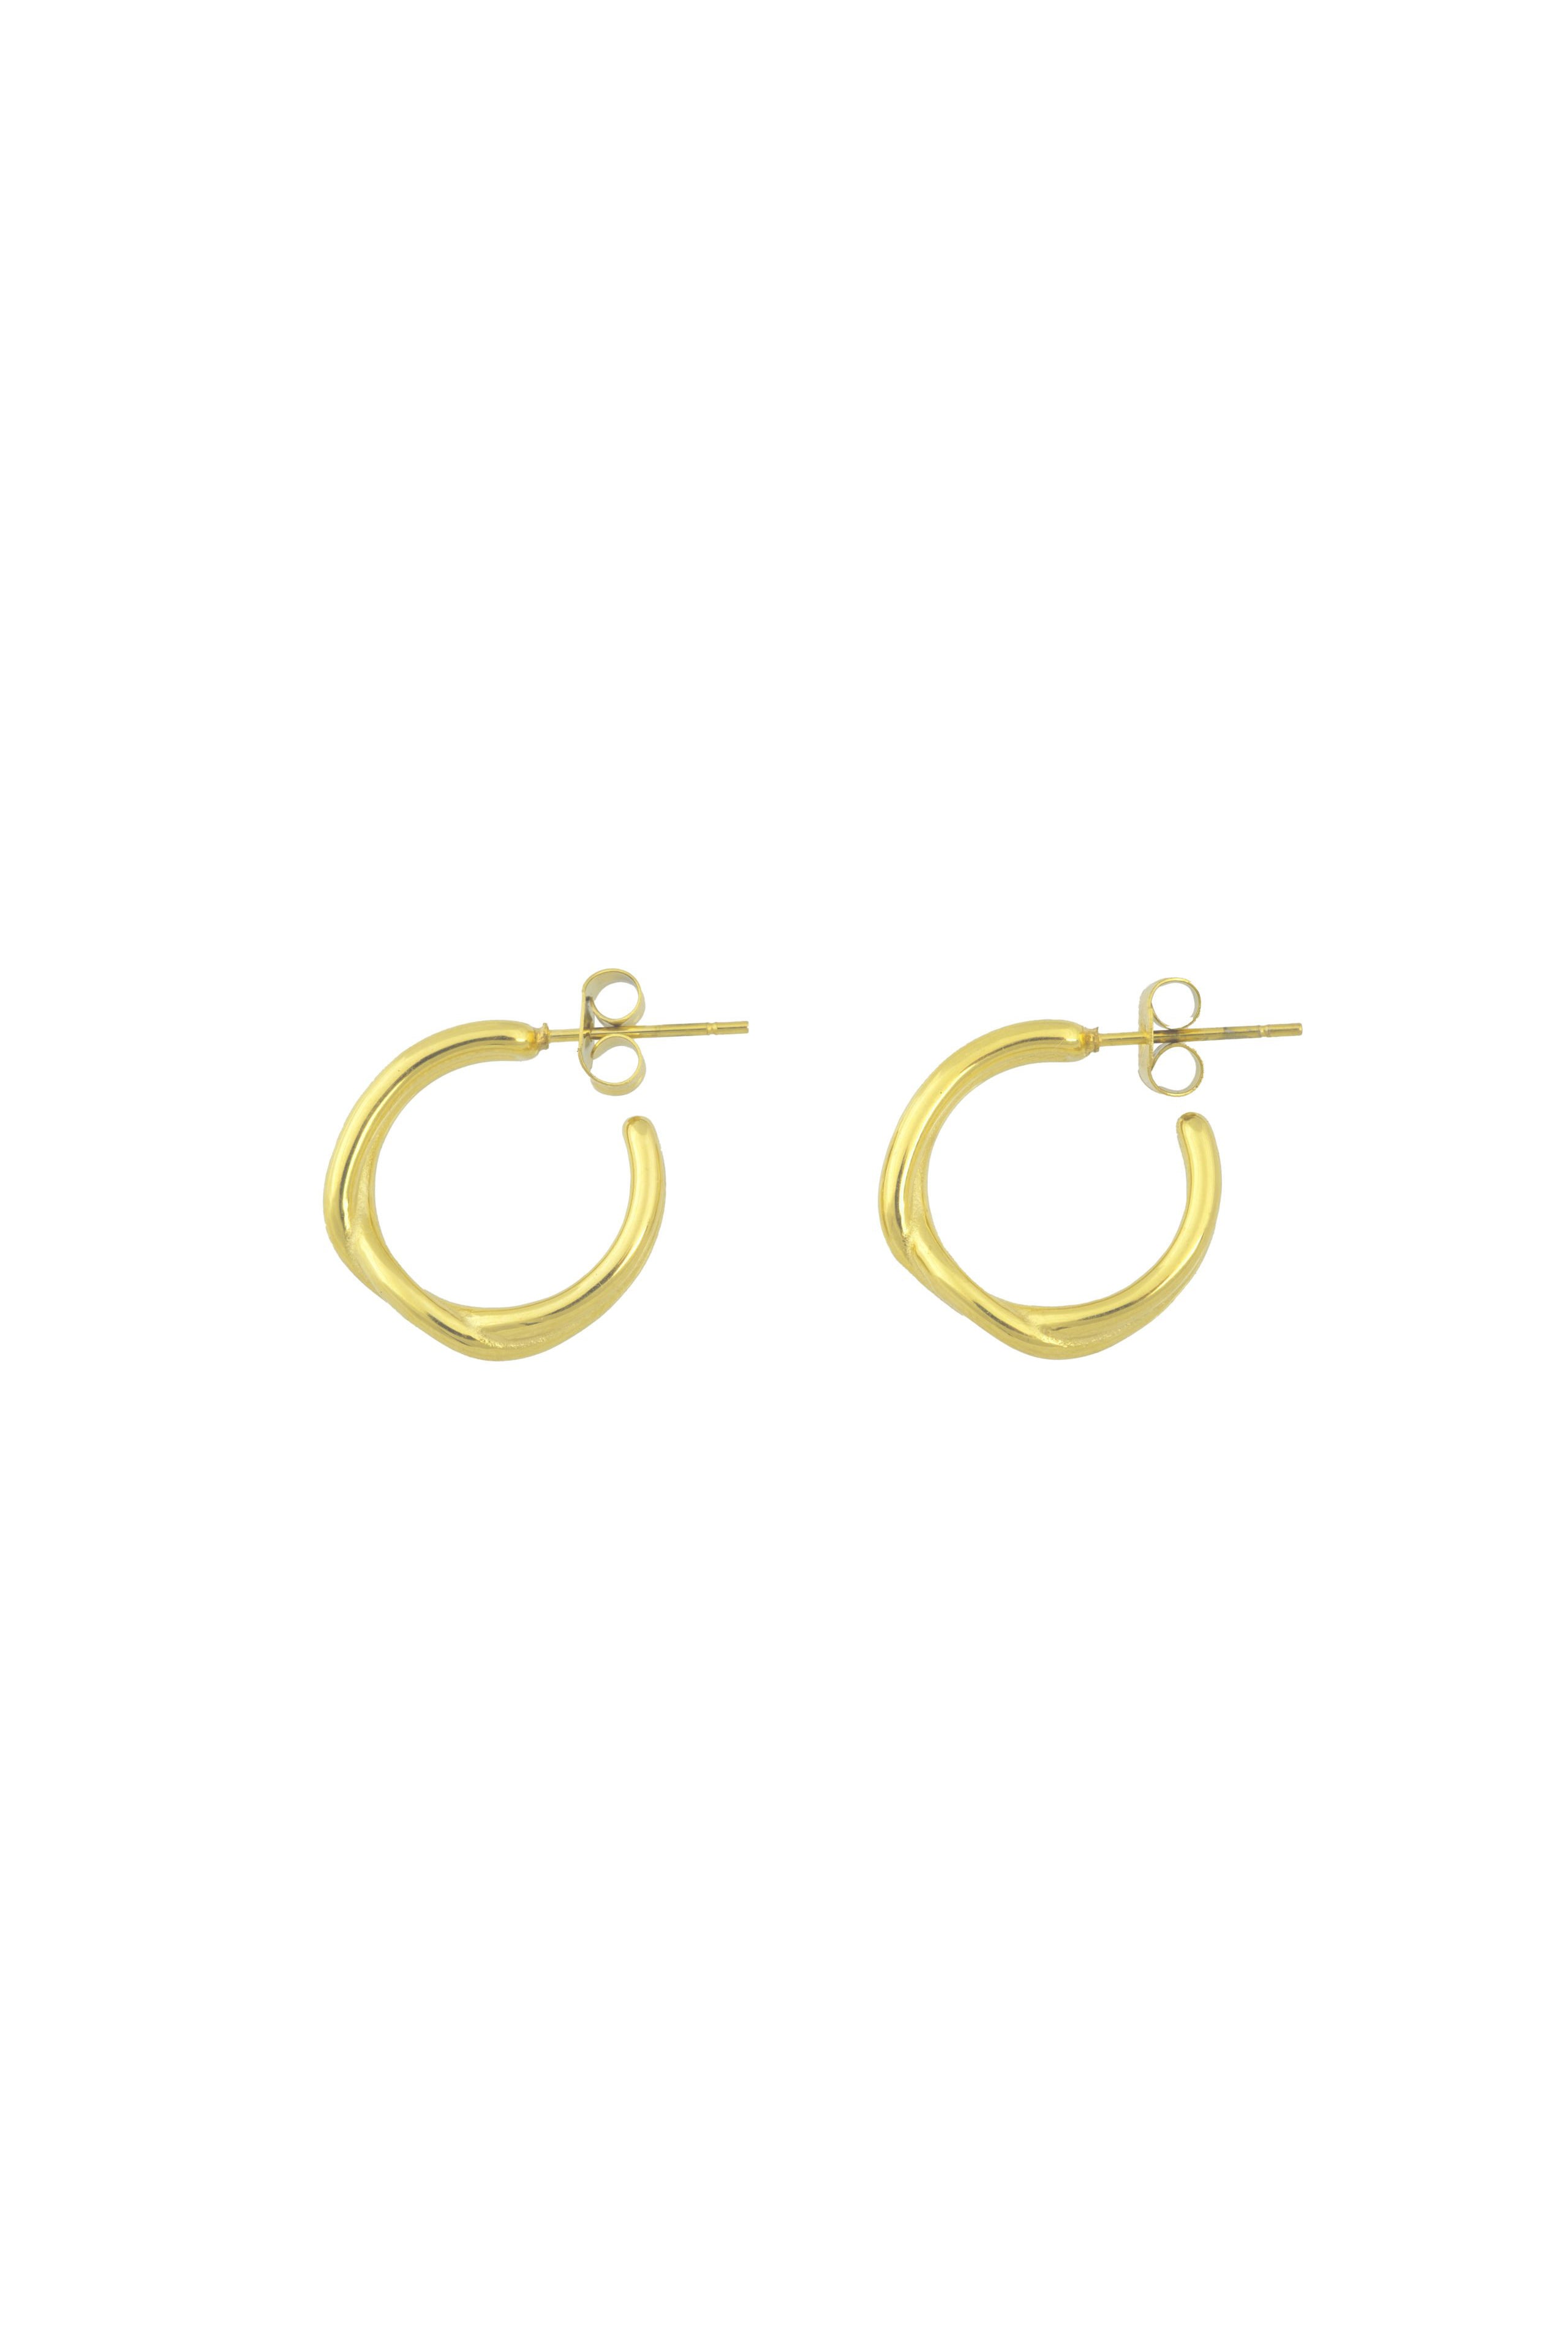 Twine Earrings - Gold